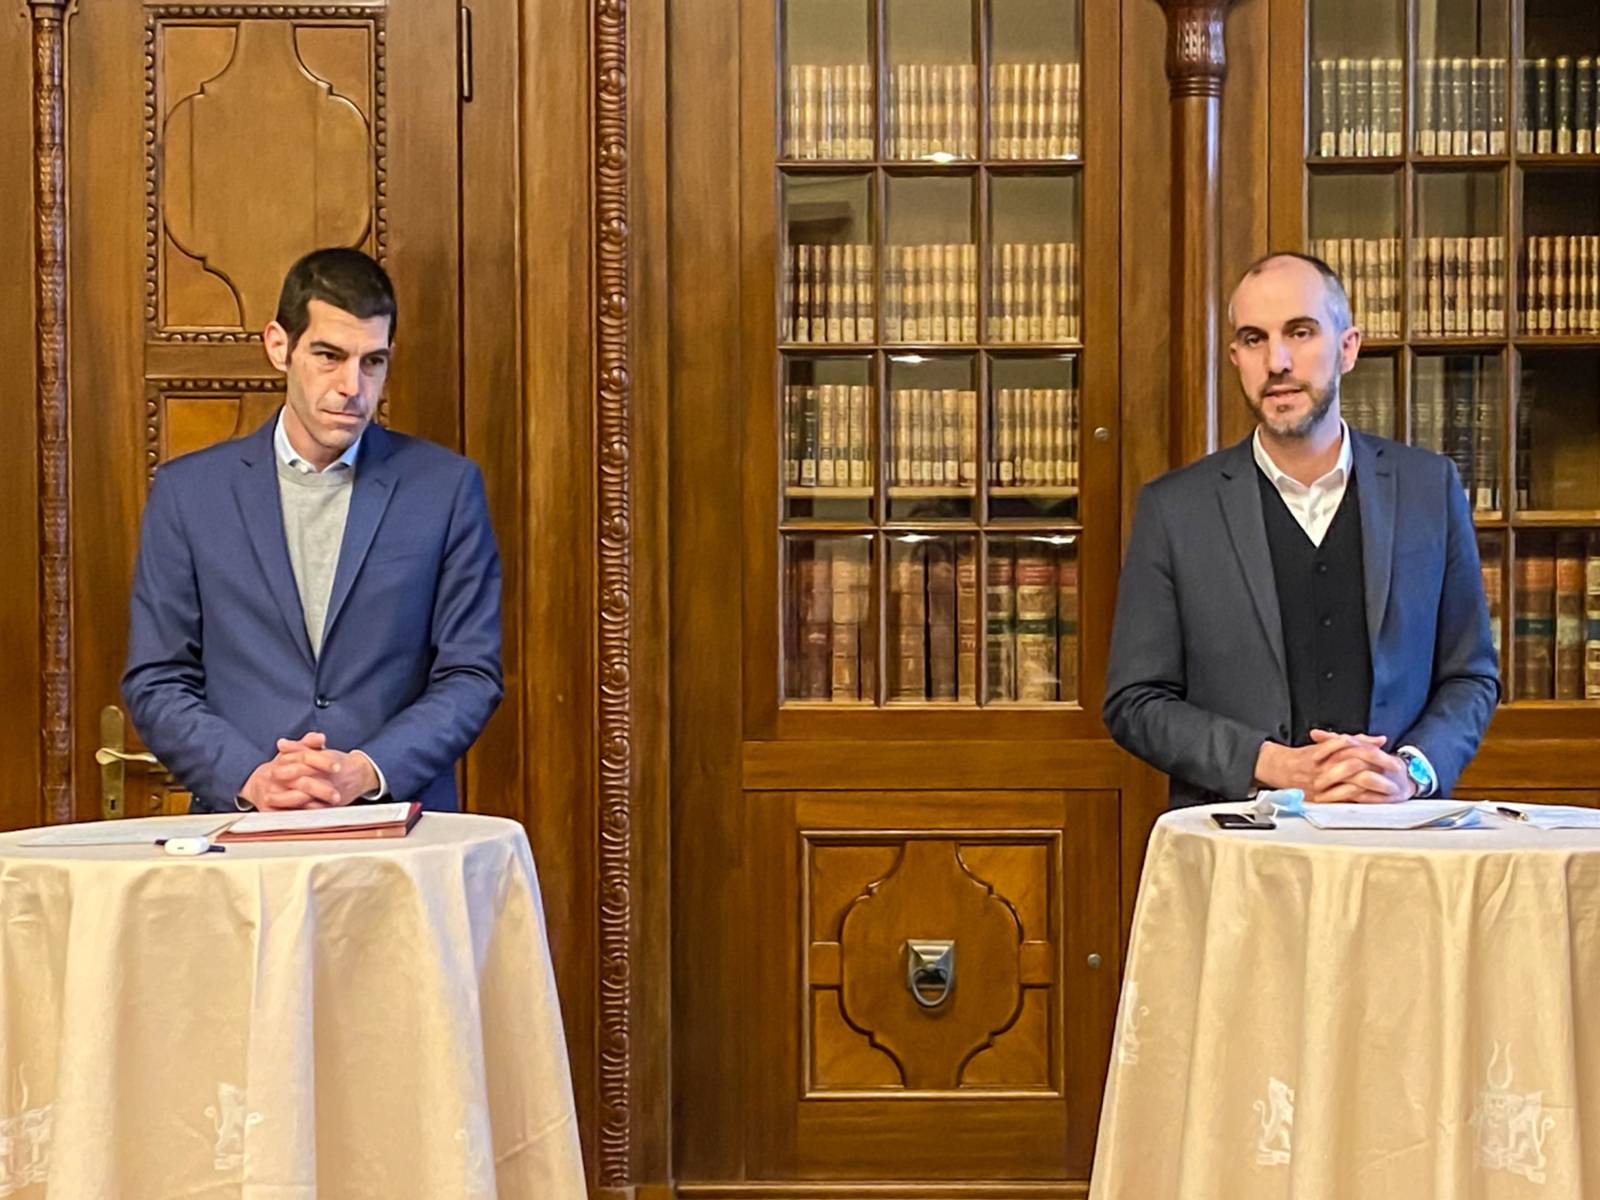 Zwei Männer stehen während einer Pressekonferenz jeweils an einem tisch